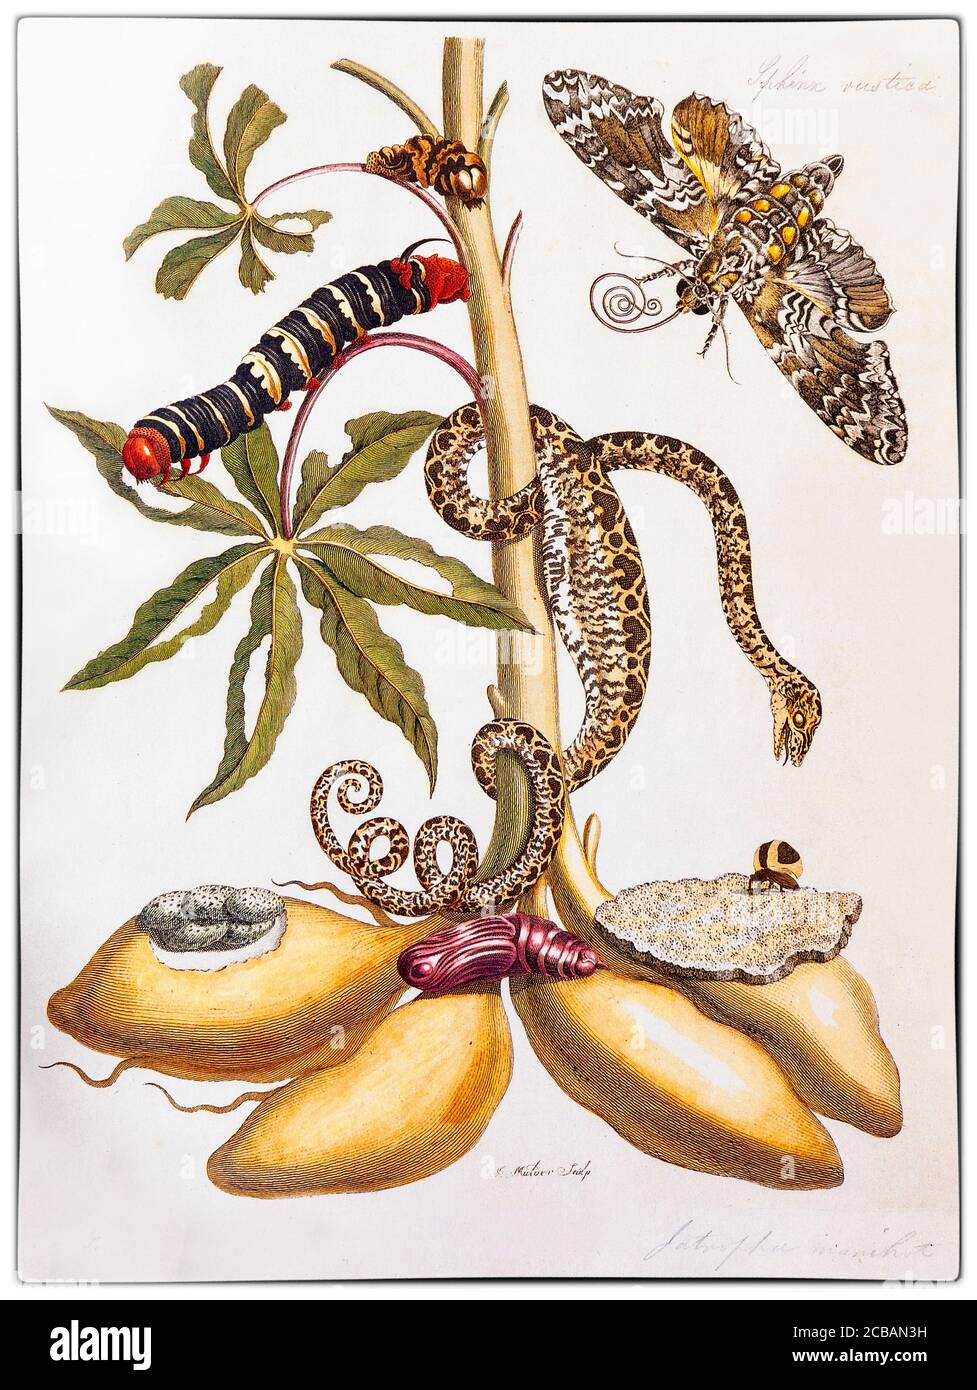 Maria Sibylla Merian (1647-1717) était naturaliste et illustratrice scientifique d'origine allemande, descendant de la branche de Francfort de la famille suisse mérienne. Merian a été l'un des premiers naturalistes européens à observer directement les insectes. L'illustration montre Manihot esculenta, communément appelé manioc, un arbuste ligneux originaire d'Amérique du Sud de la famille de l'épi, Euphorbiaceae avec une Métamorphose de serpent et de Moth de l'artiste 'Metamorphose Insectorum Surinamensium' Banque D'Images